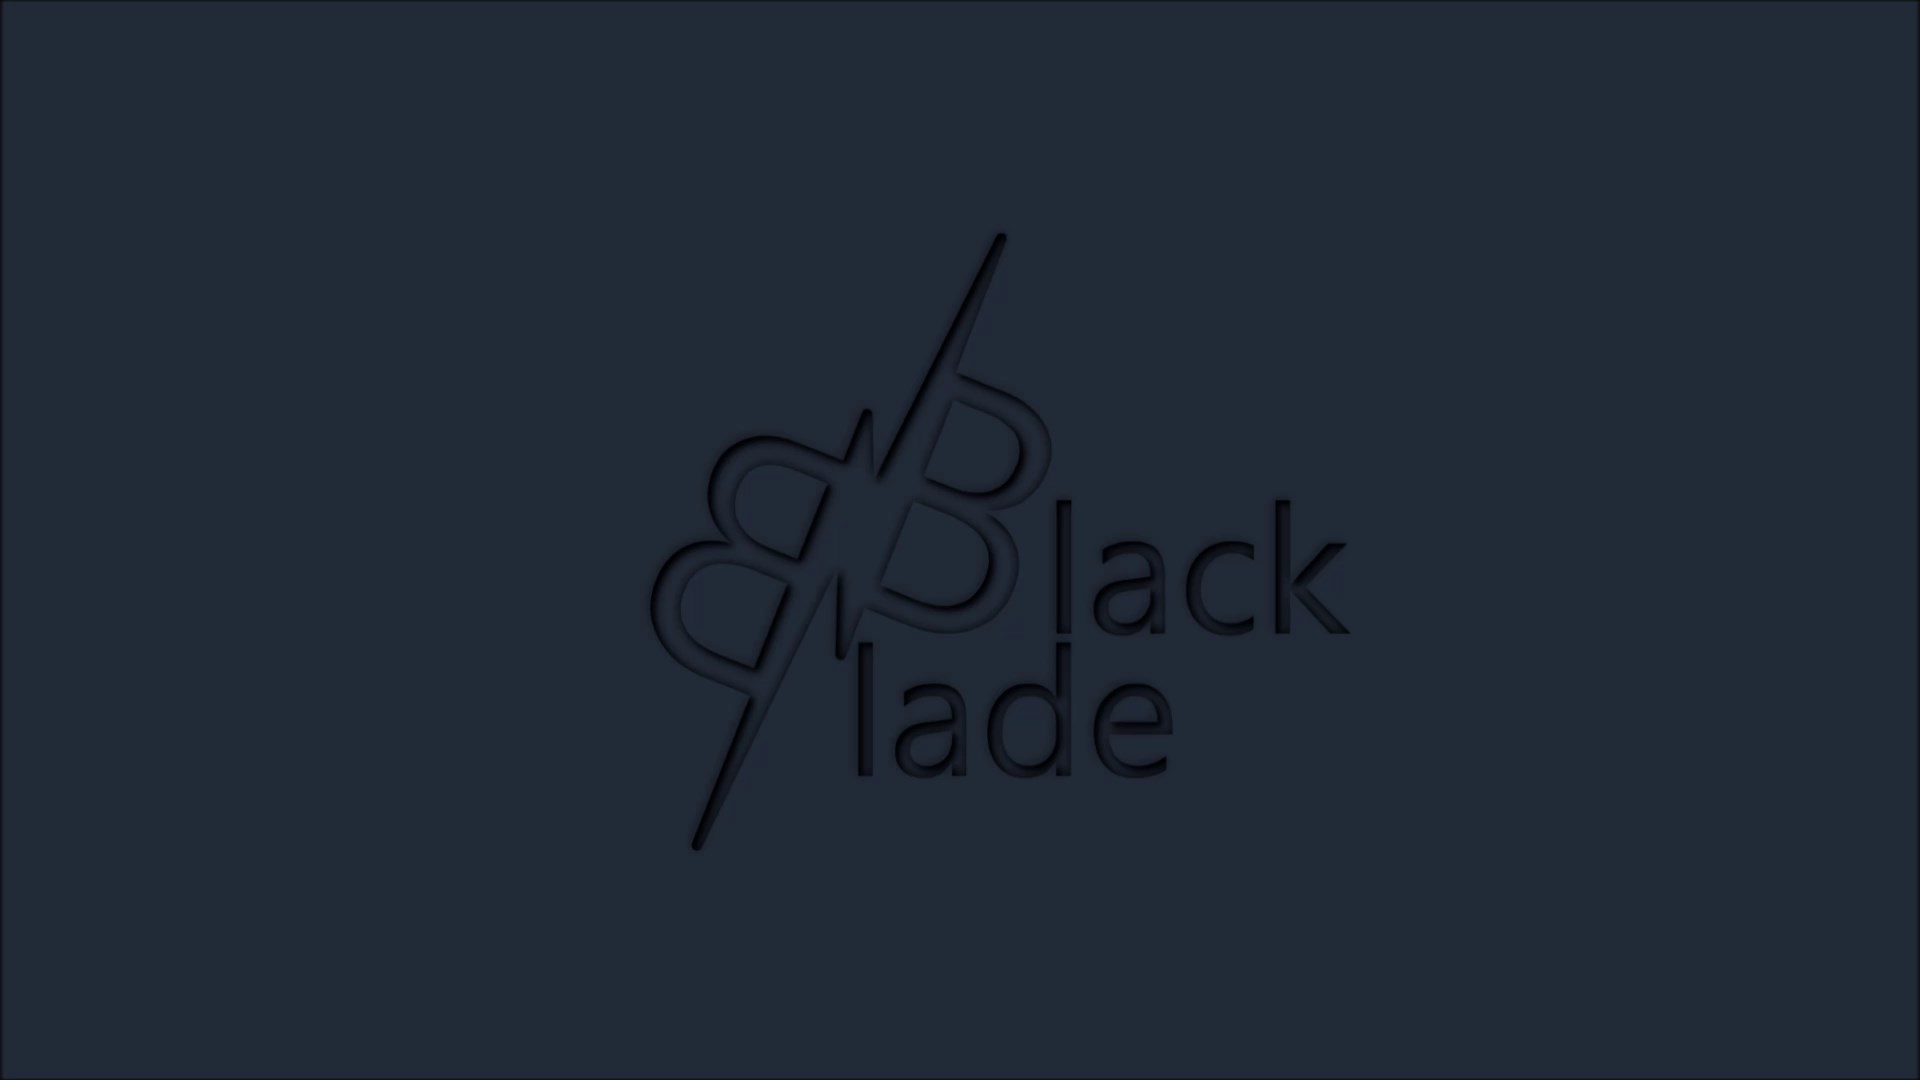 Black Blade - action / arcade racing